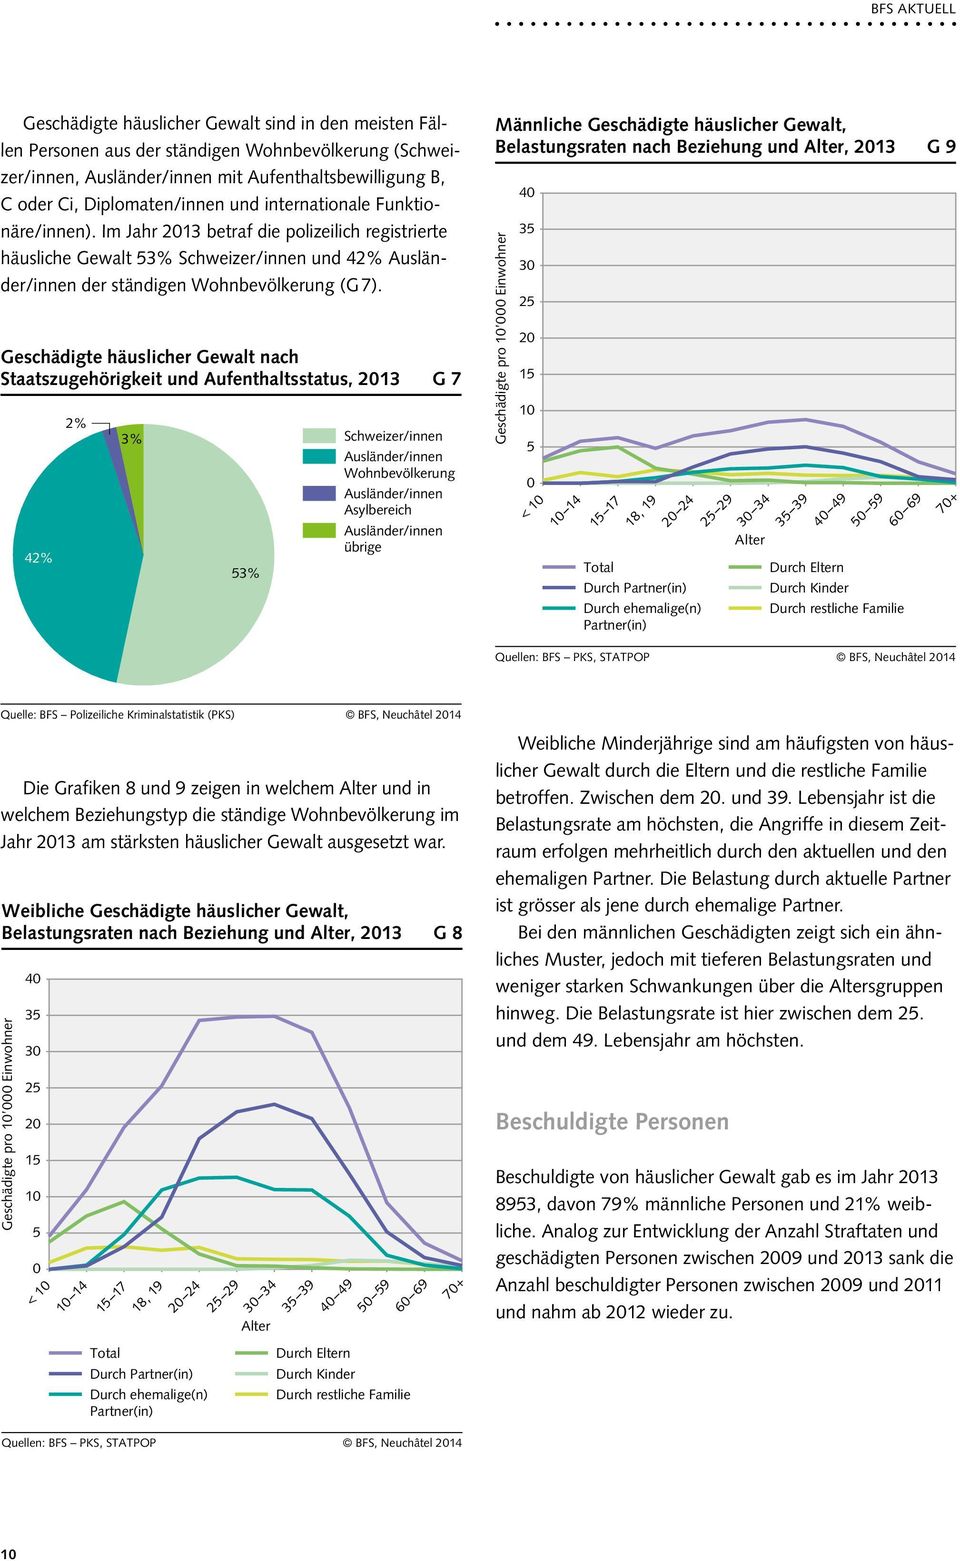 Geschädigte häuslicher Gewalt nach Staatszugehörigkeit und Aufenthaltsstatus, 2013 G 7 42% 2% 3% 53% Schweizer/innen Ausländer/innen Wohnbevölkerung Ausländer/innen Asylbereich Ausländer/innen übrige